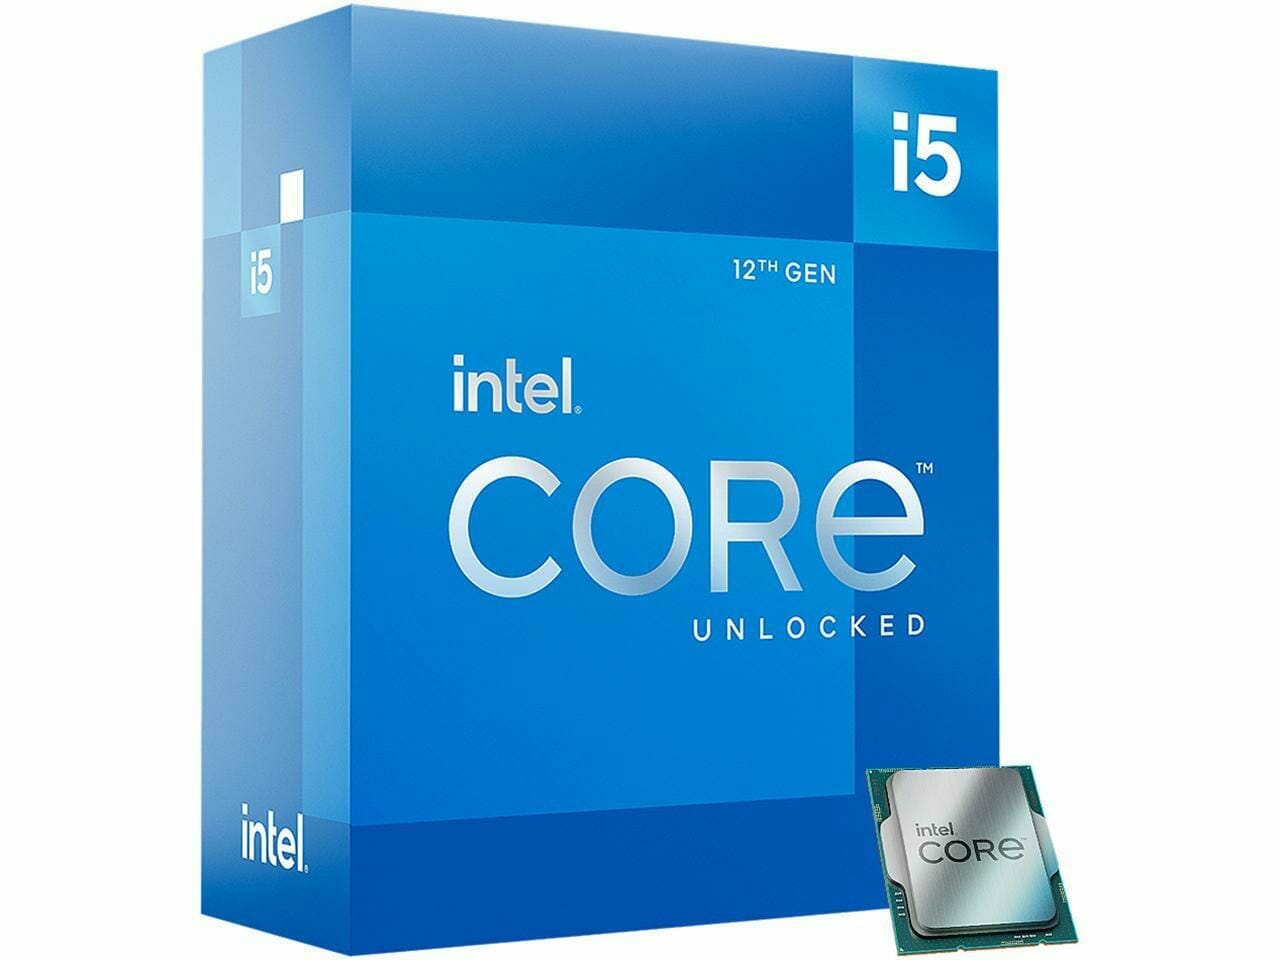 Intel 12th Gen Core i5 12600K Processor